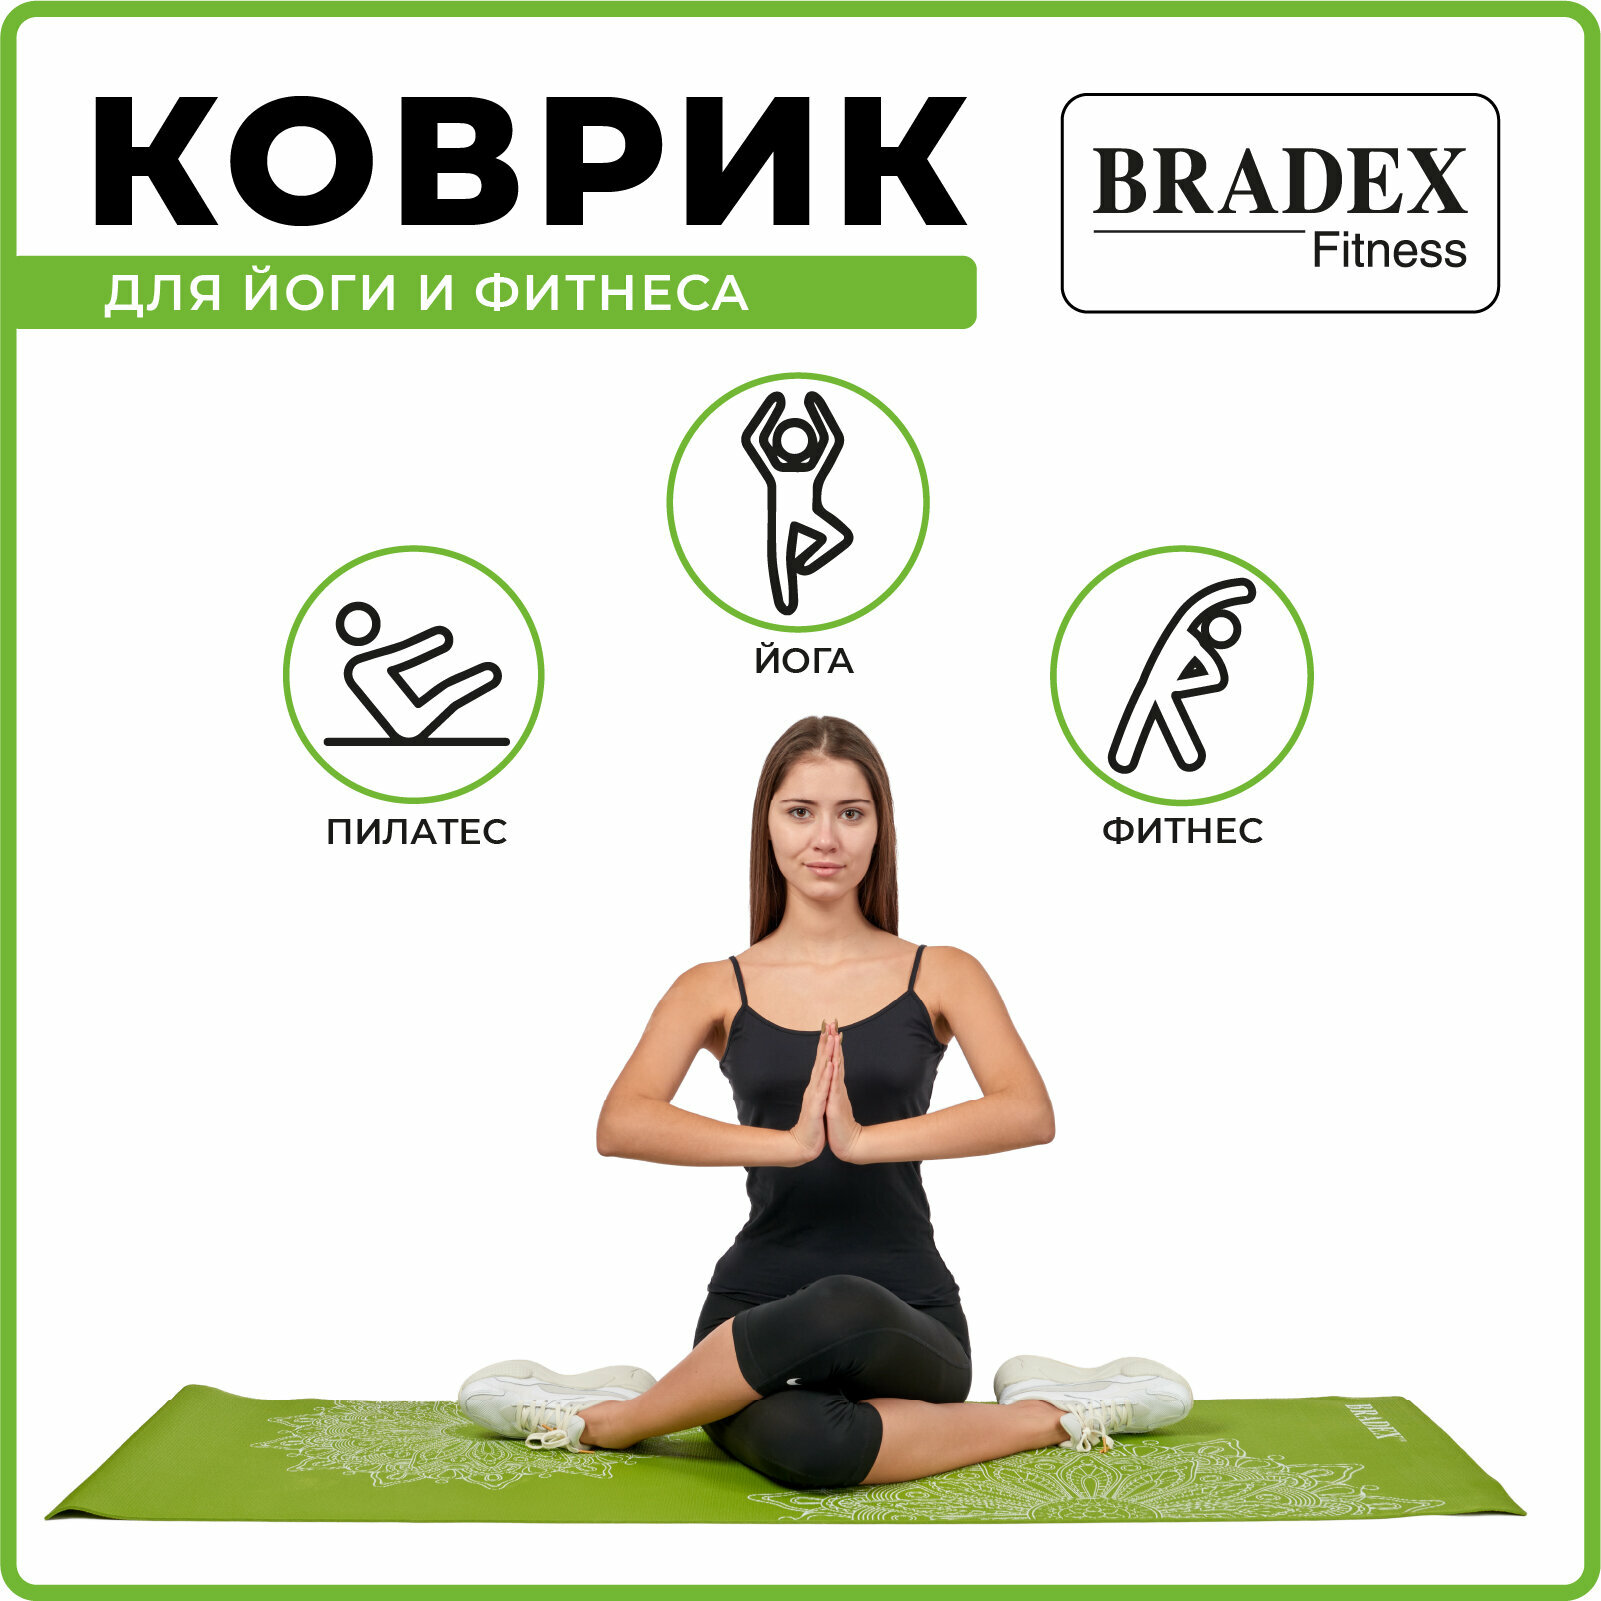 Коврик для йоги и фитнеса Bradex - фото №4